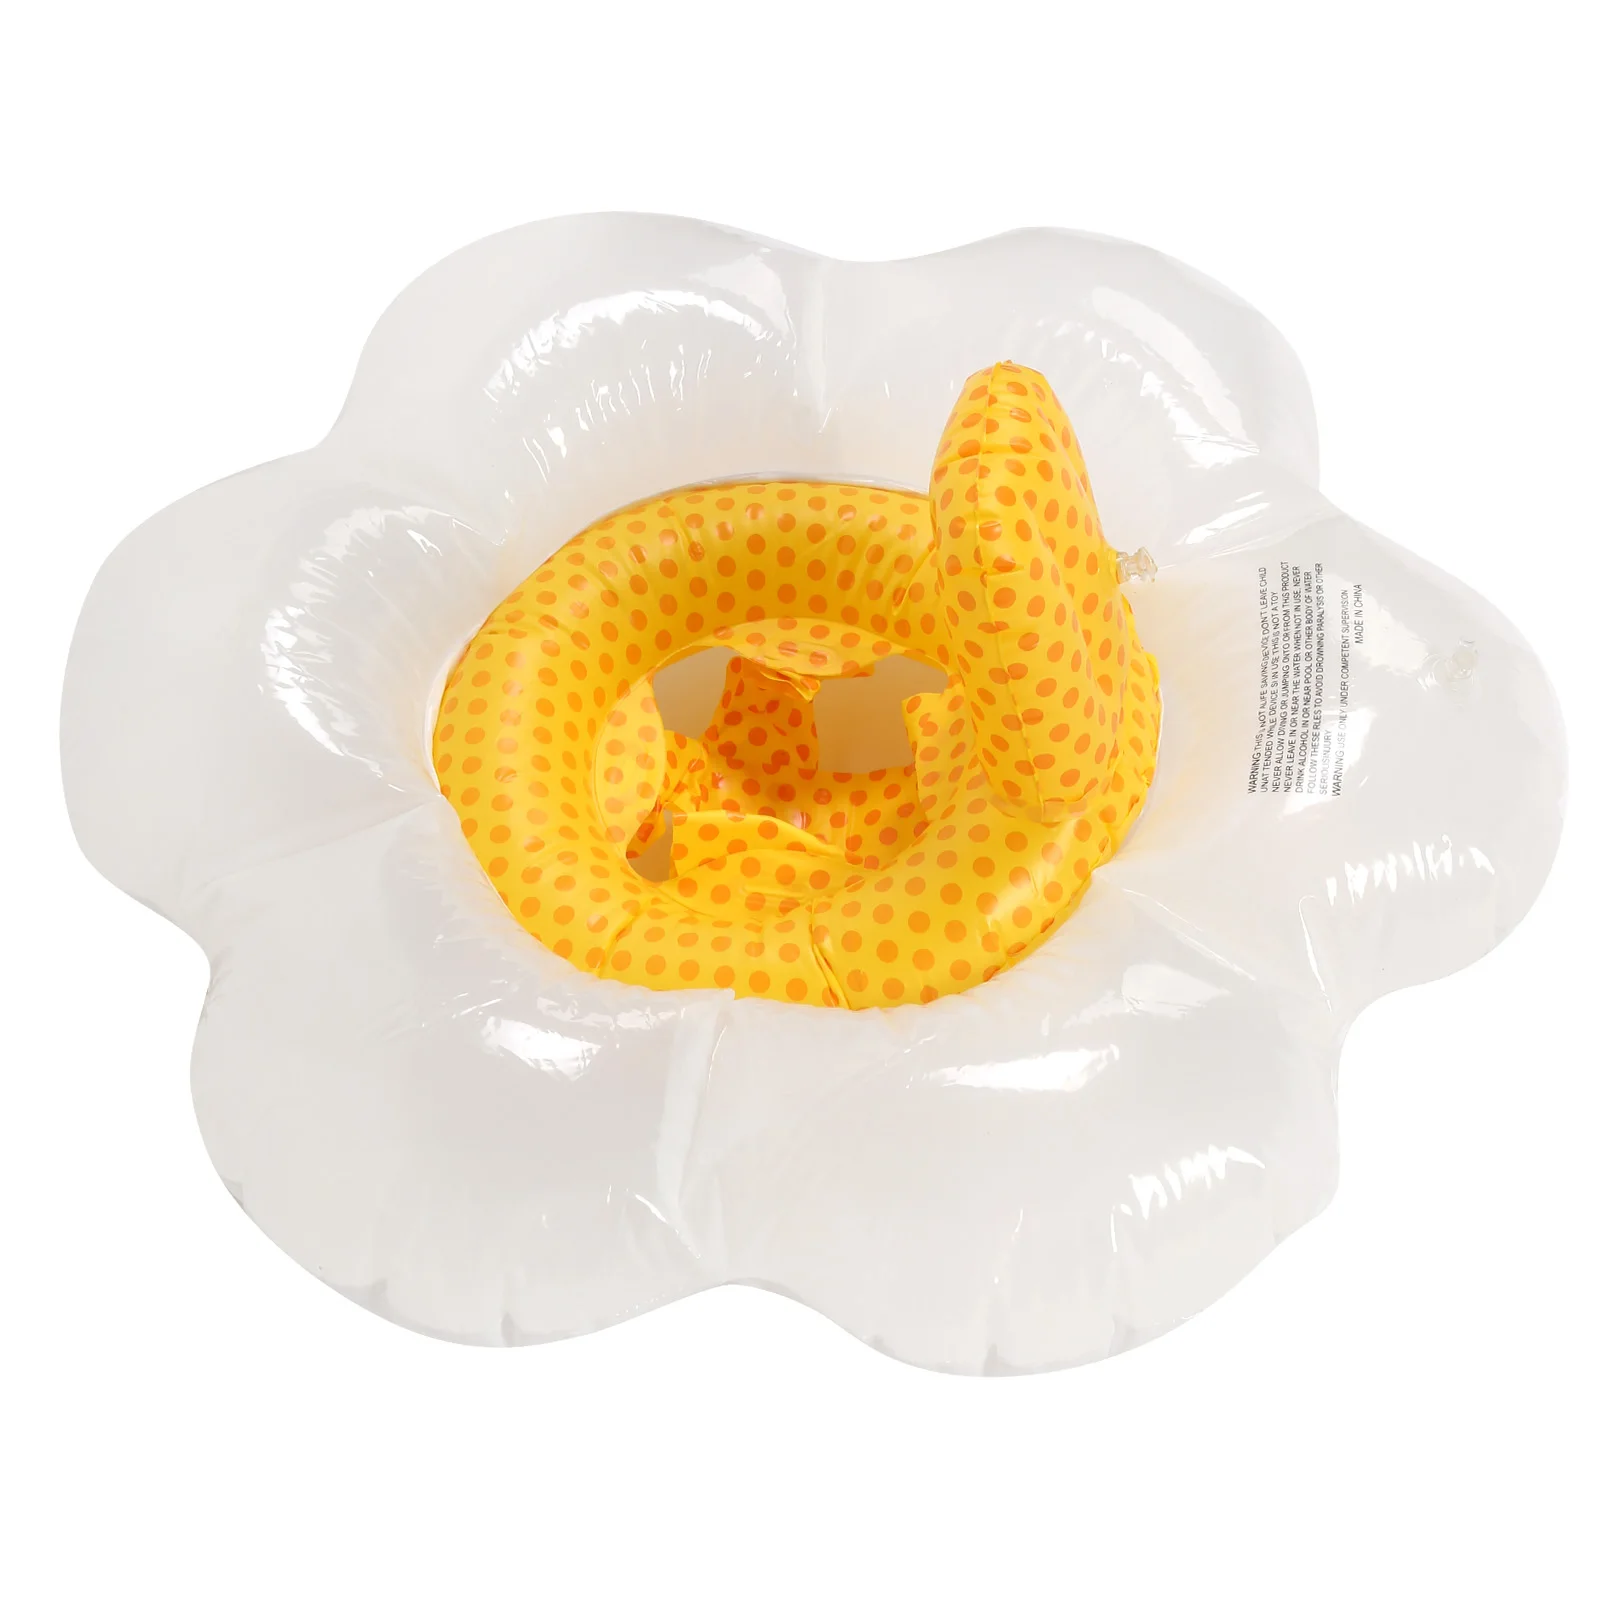 Детское Надувное Кольцо для плавания с Сиденьем Безопасности, Поплавки для бассейна в форме цветка